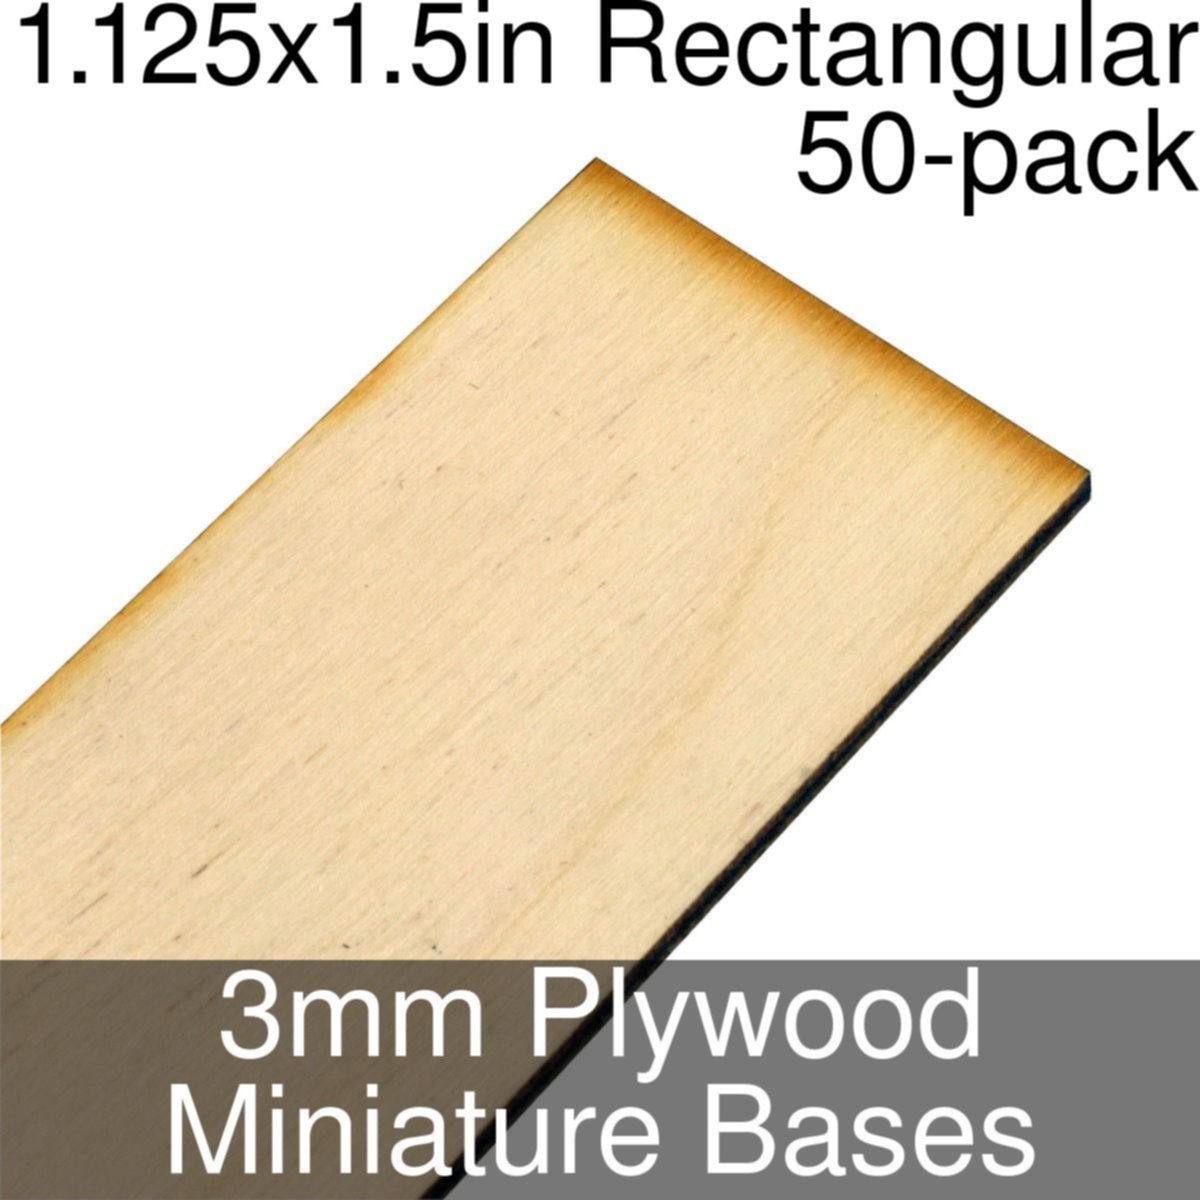 1.125x1.5-zöllige rechteckige Miniaturbasen